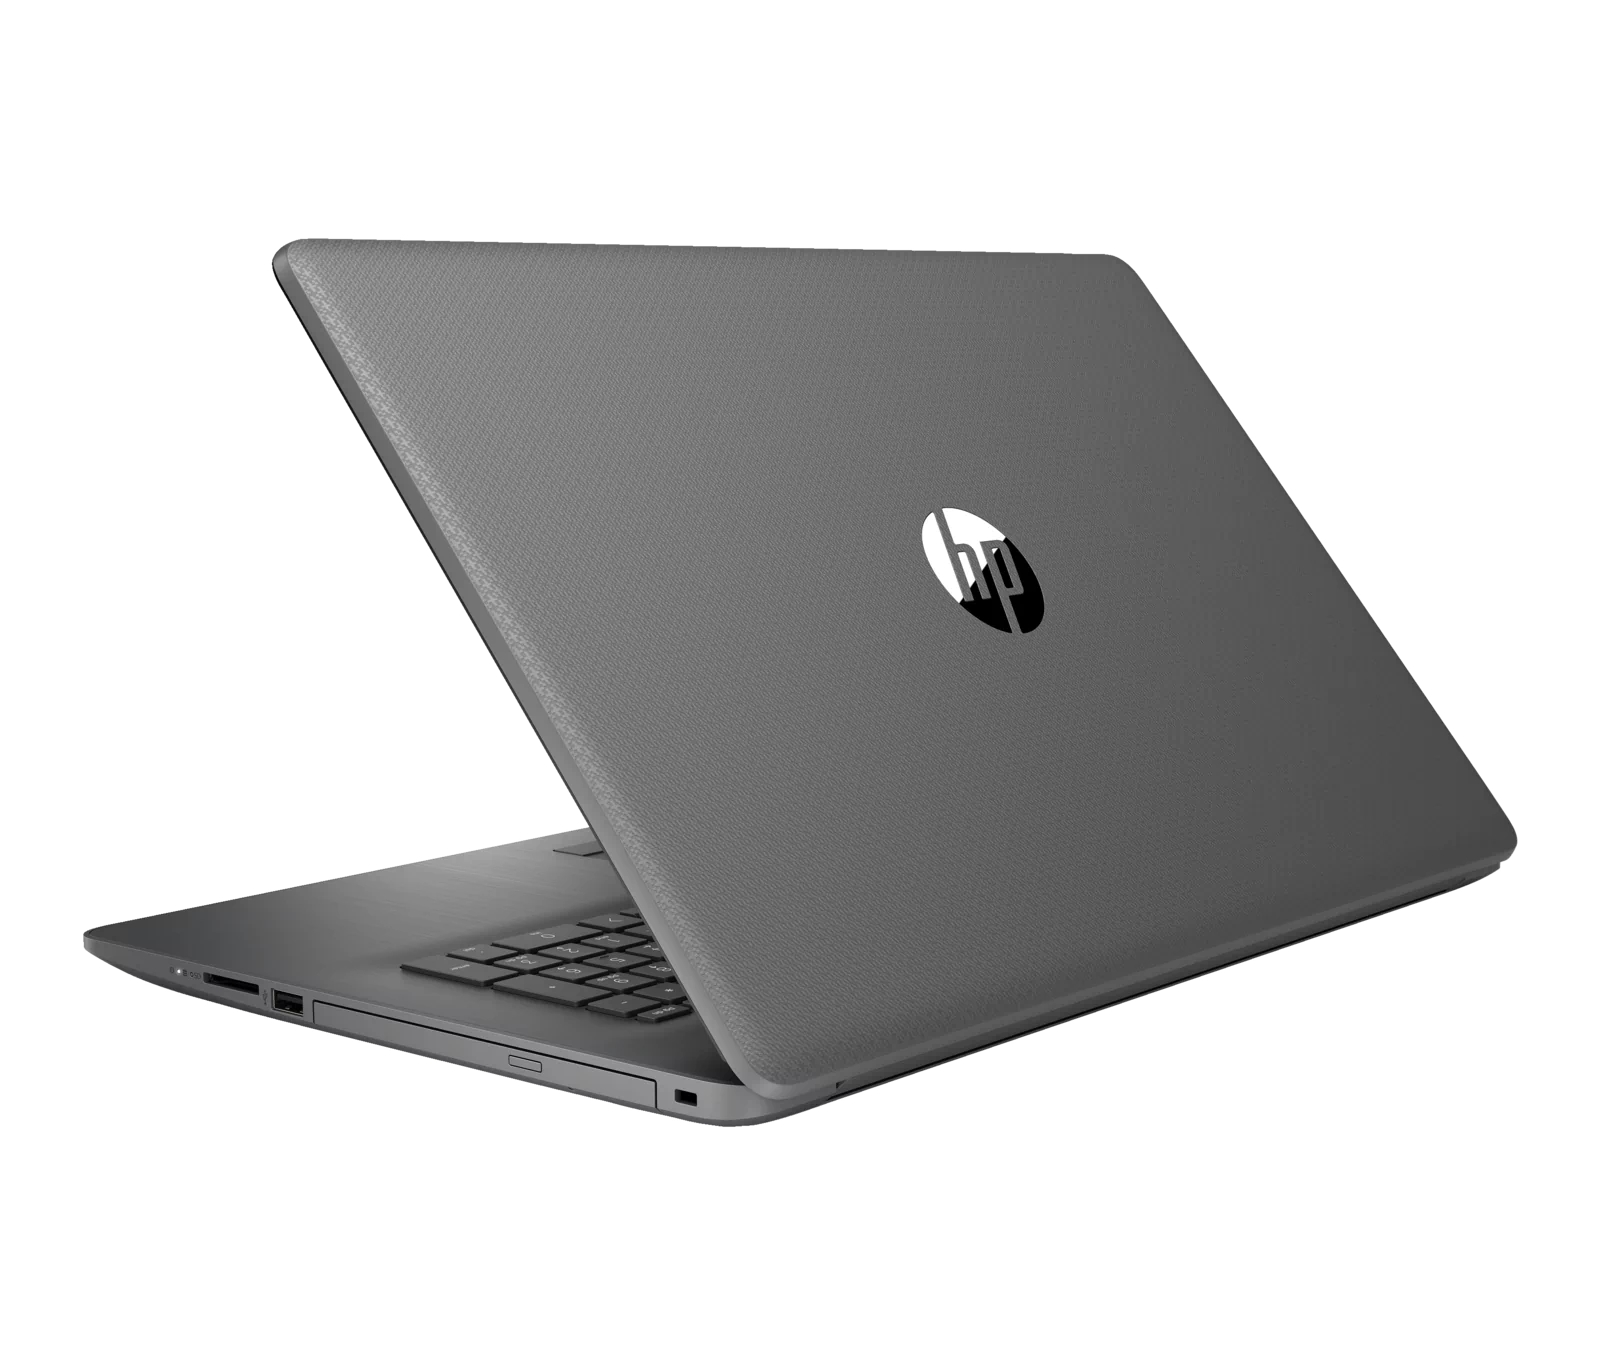 Laptop HP 17-by1021cl / 6MW67UAR / Intel i3 / 4GB / HDD 1TB / Intel UHD / HD+ / Win 11 / Czarny